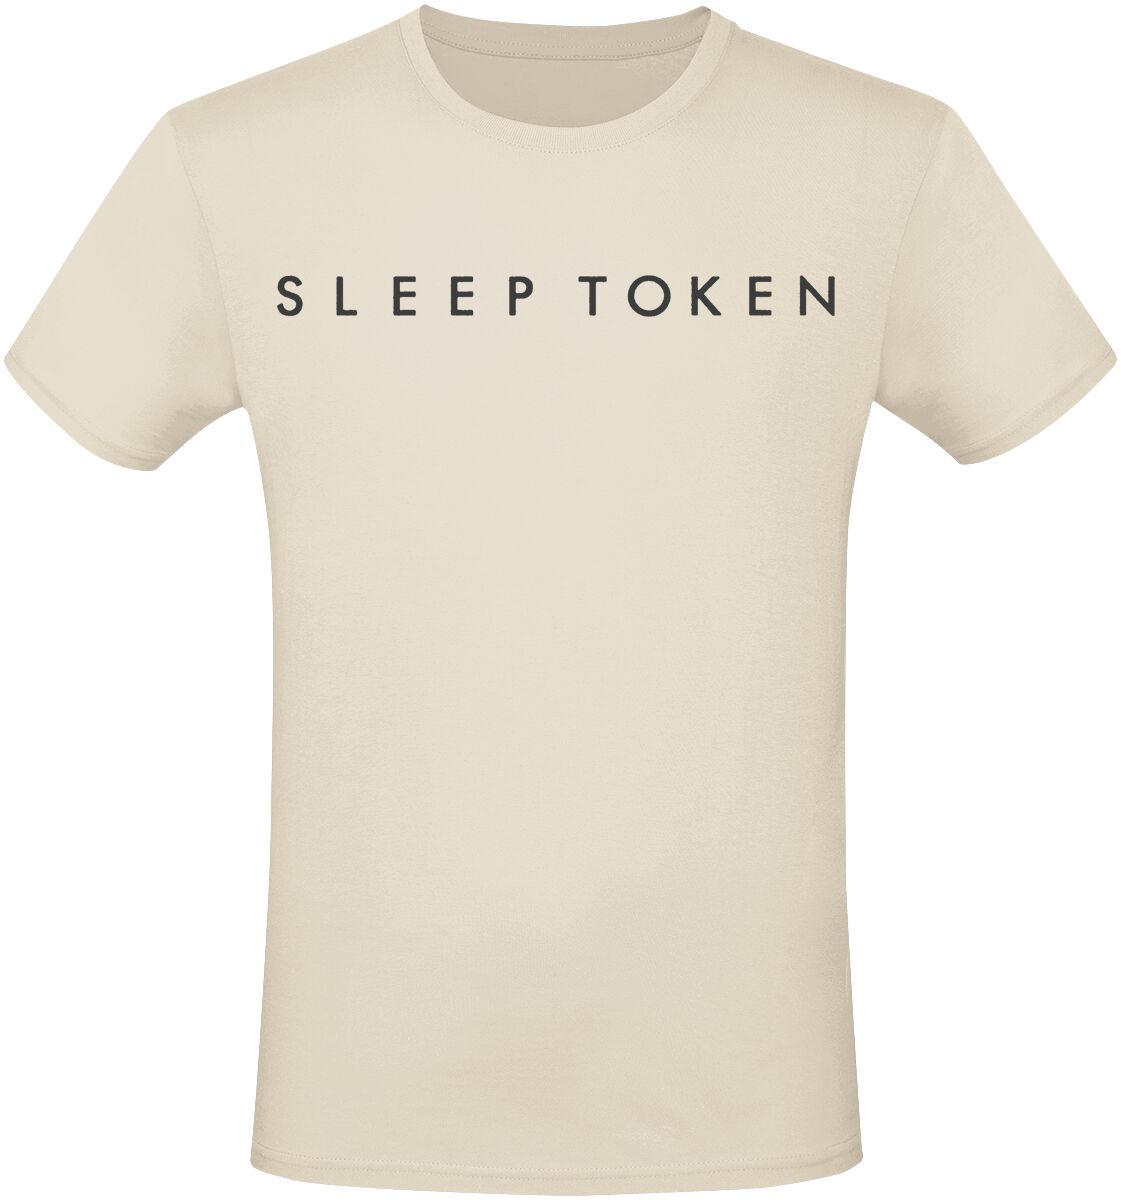 Sleep Token T-Shirt - Take Me Back To Eden - S bis 3XL - für Männer - Größe M - beige  - EMP exklusives Merchandise!